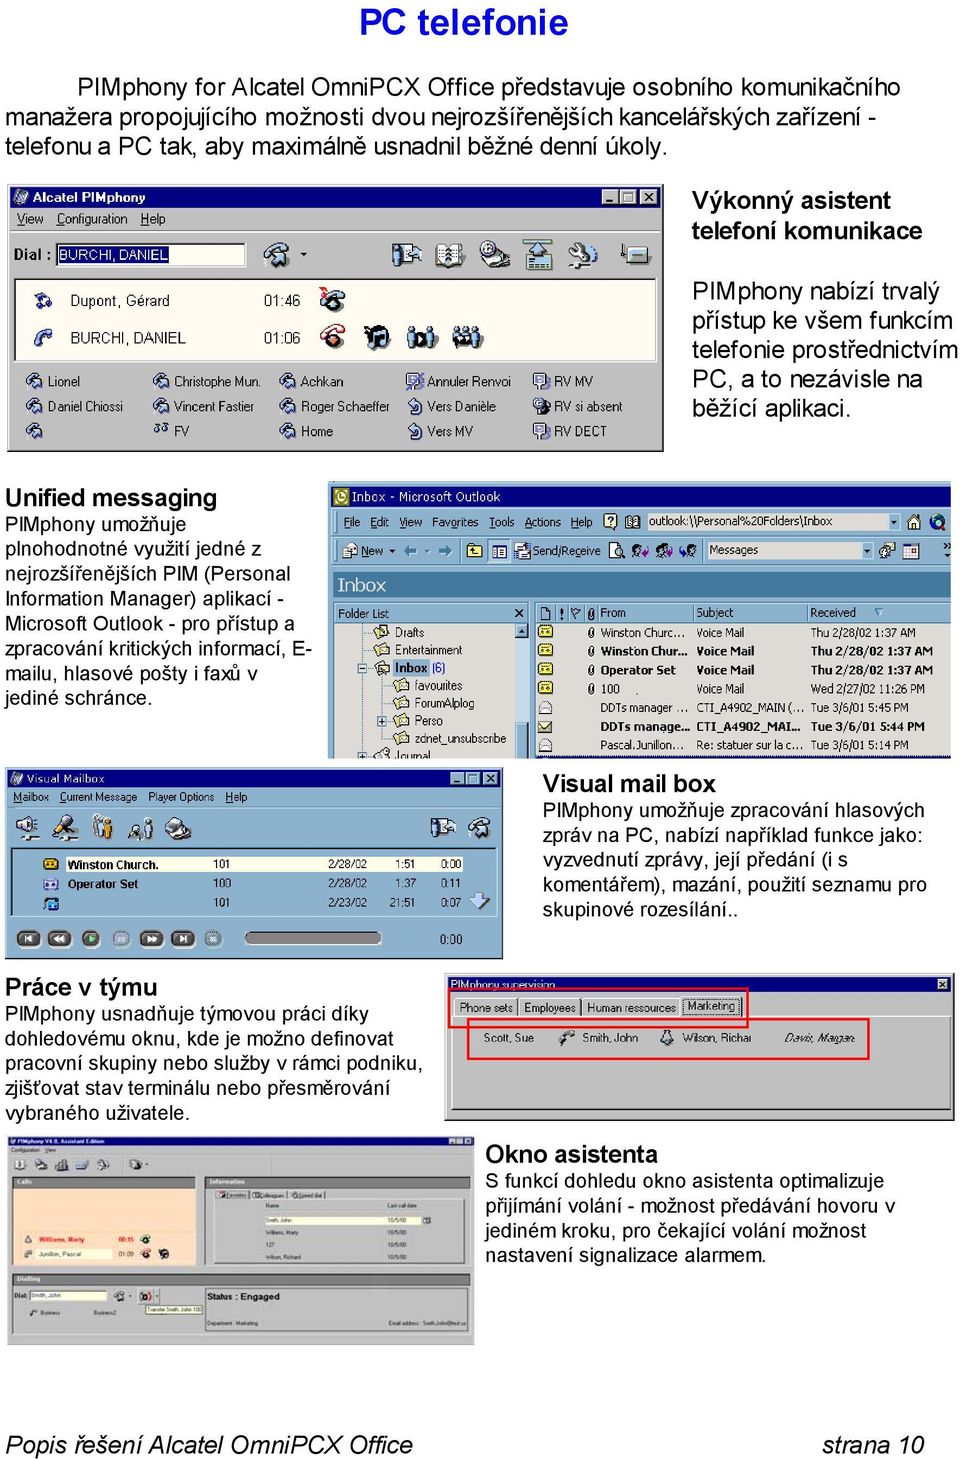 Unified messaging PIMphony umožňuje plnohodnotné využití jedné z nejrozšířenějších PIM (Personal Information Manager) aplikací - Microsoft Outlook - pro přístup a zpracování kritických informací, E-